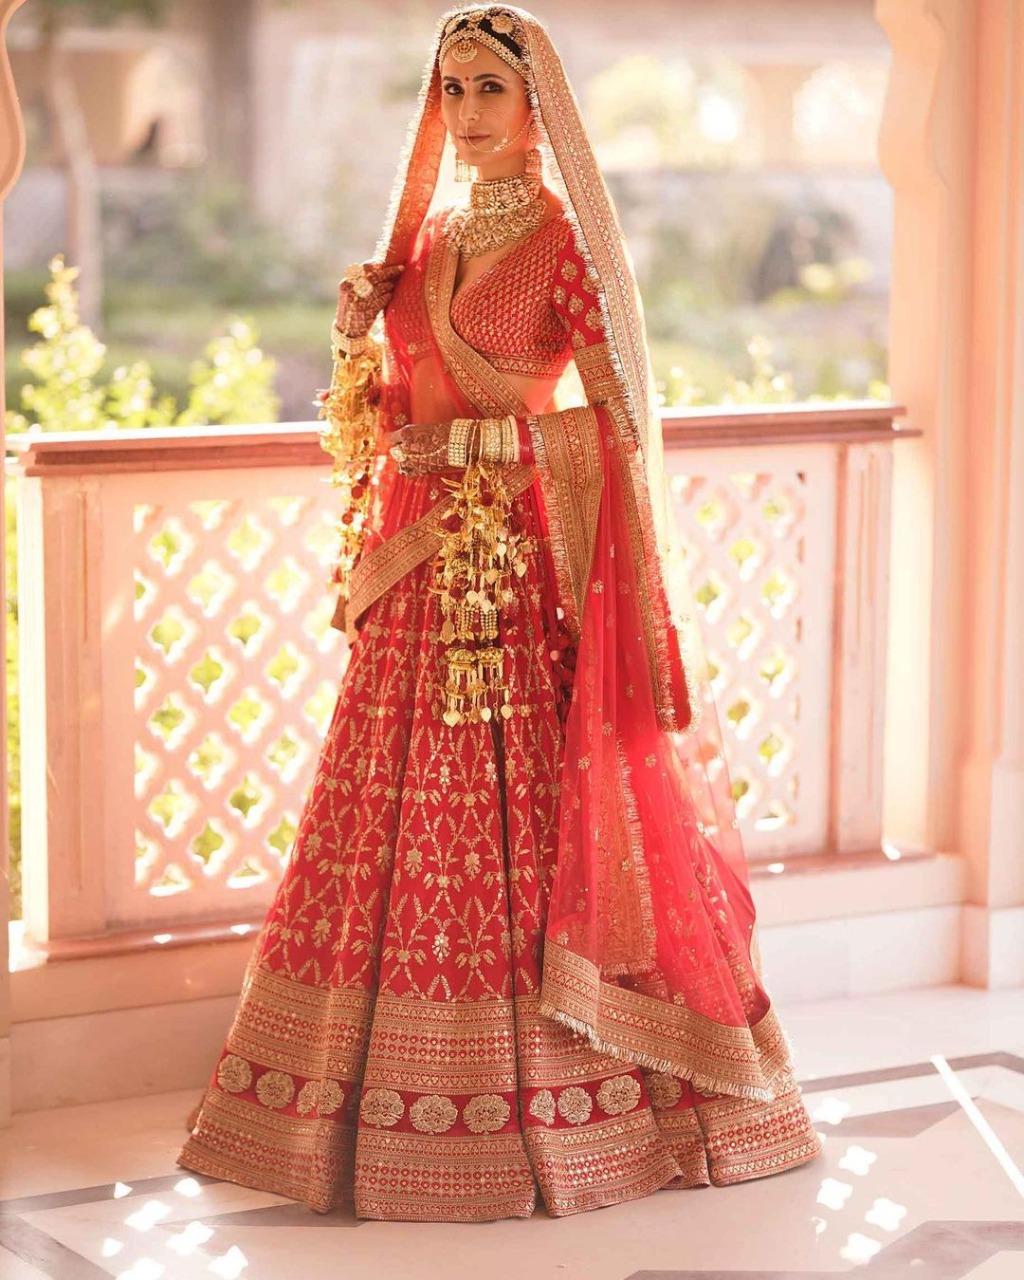 Anushka Sharma Looks Epitome Of Beauty In Latest Bridal Photoshoot |  HerZindagi